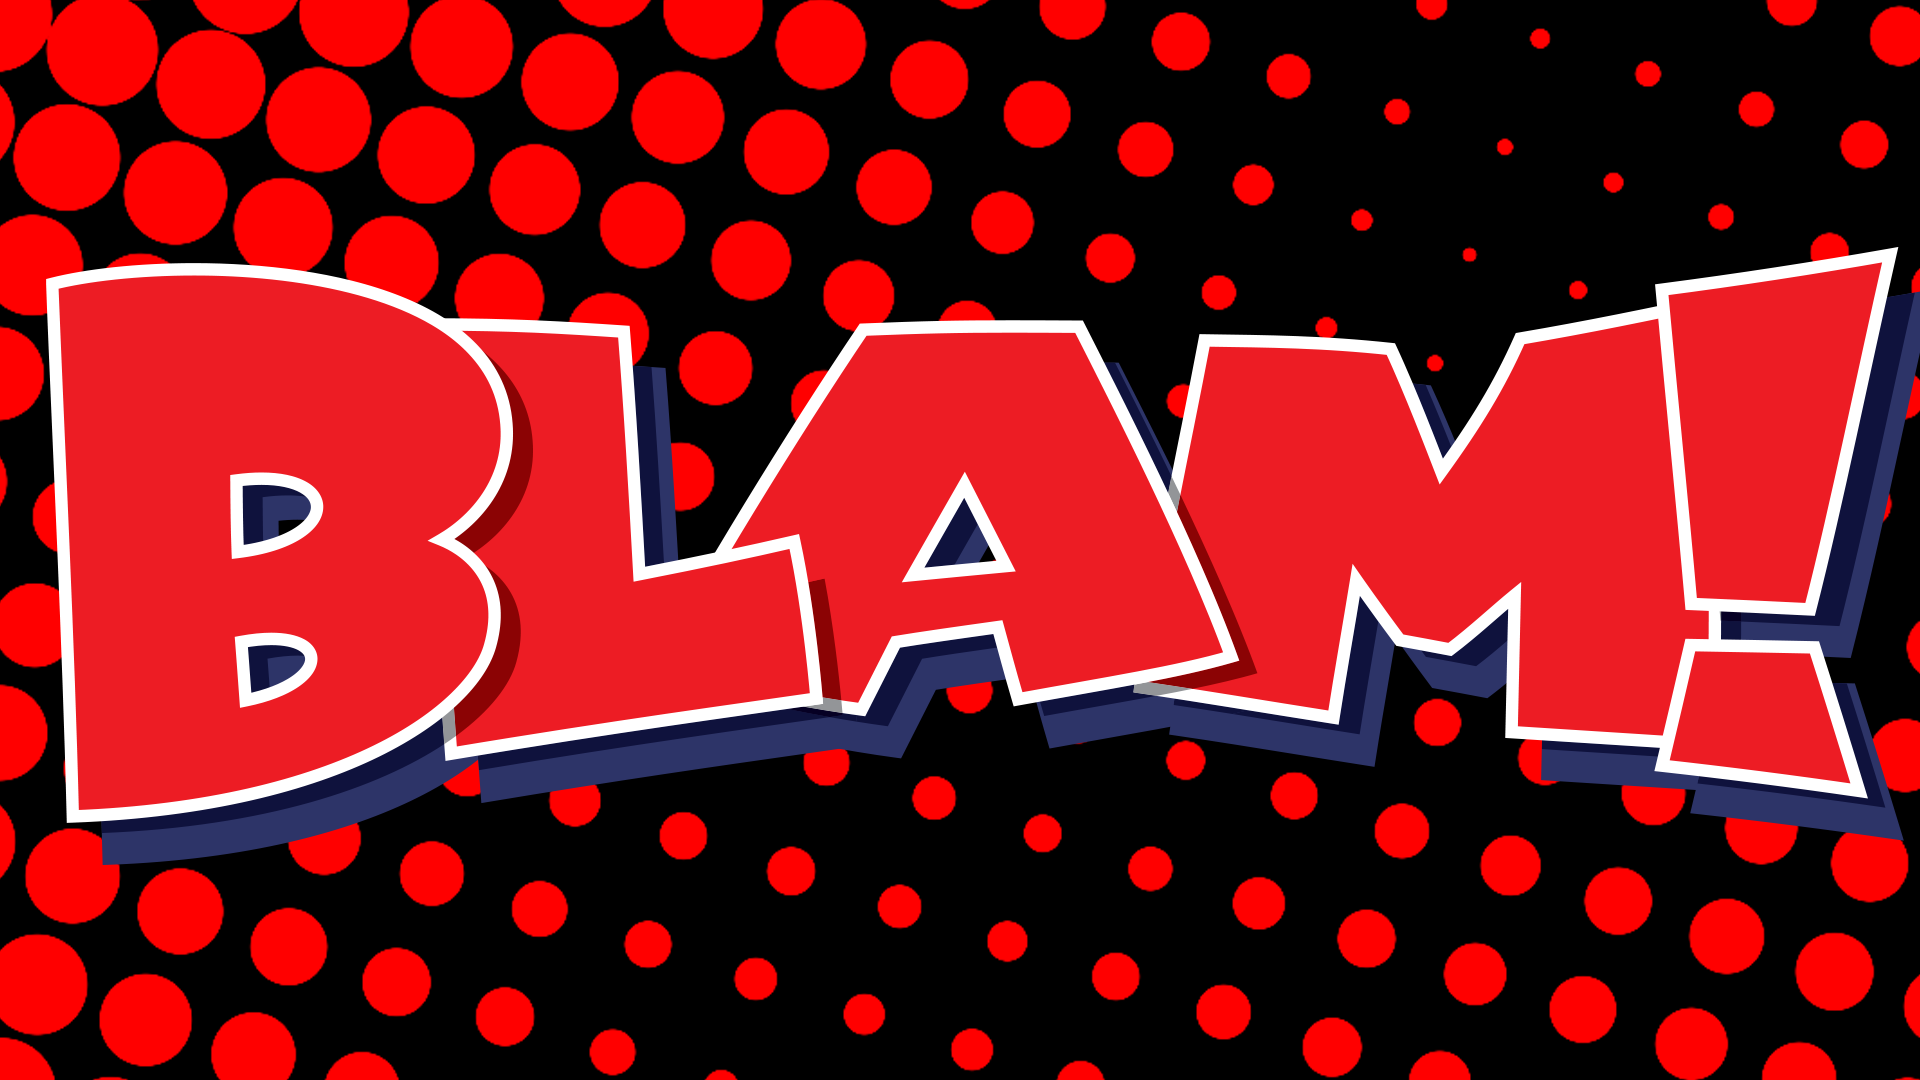 Blam!